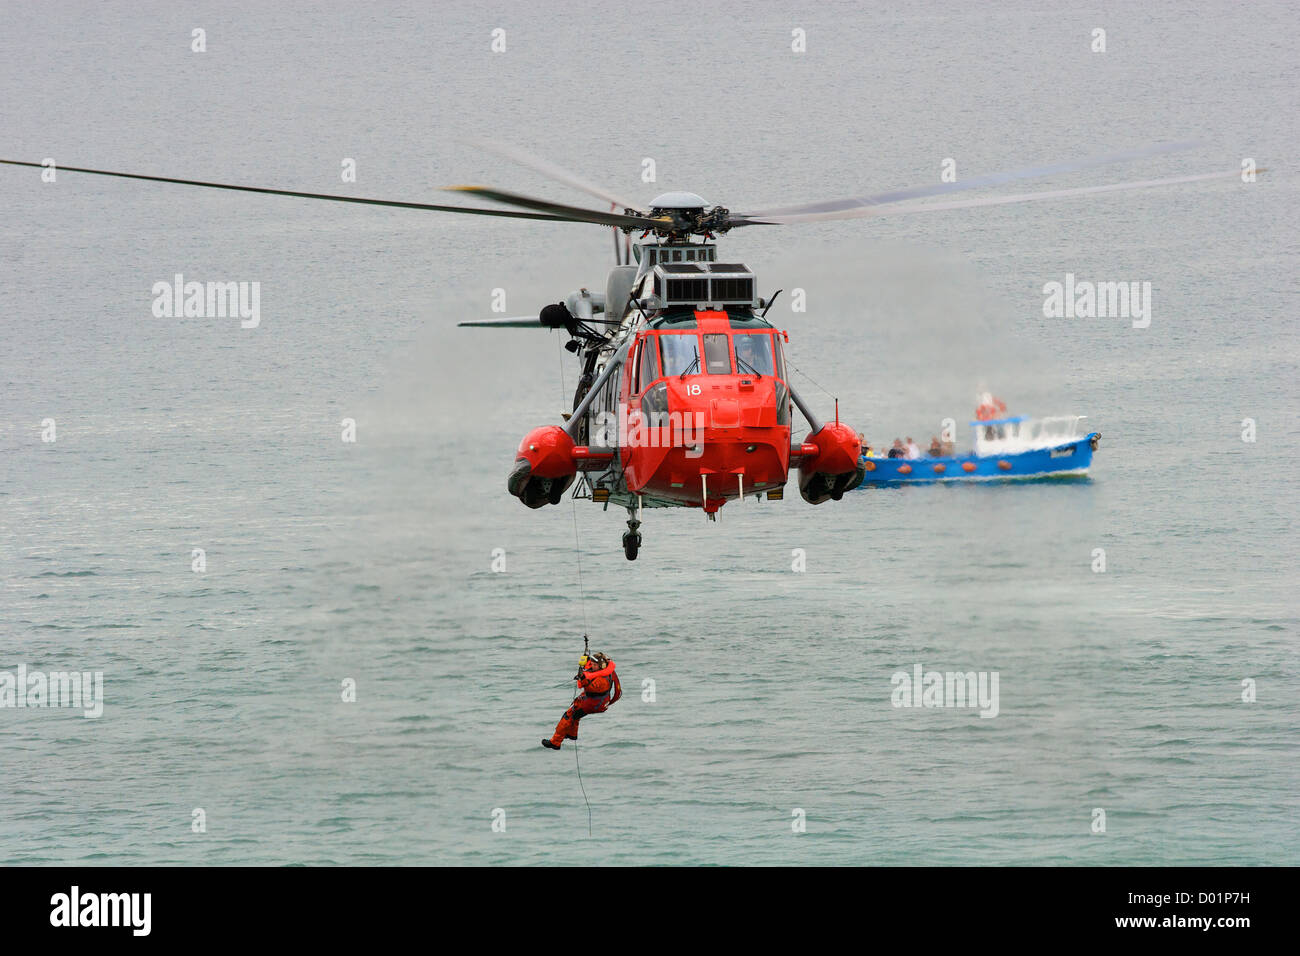 Un uomo di vino che viene abbassato da un elicottero Search and Rescue al largo di Newquay, Cornovaglia, S W Inghilterra, durante un'esercitazione di salvataggio in mare. Foto Stock